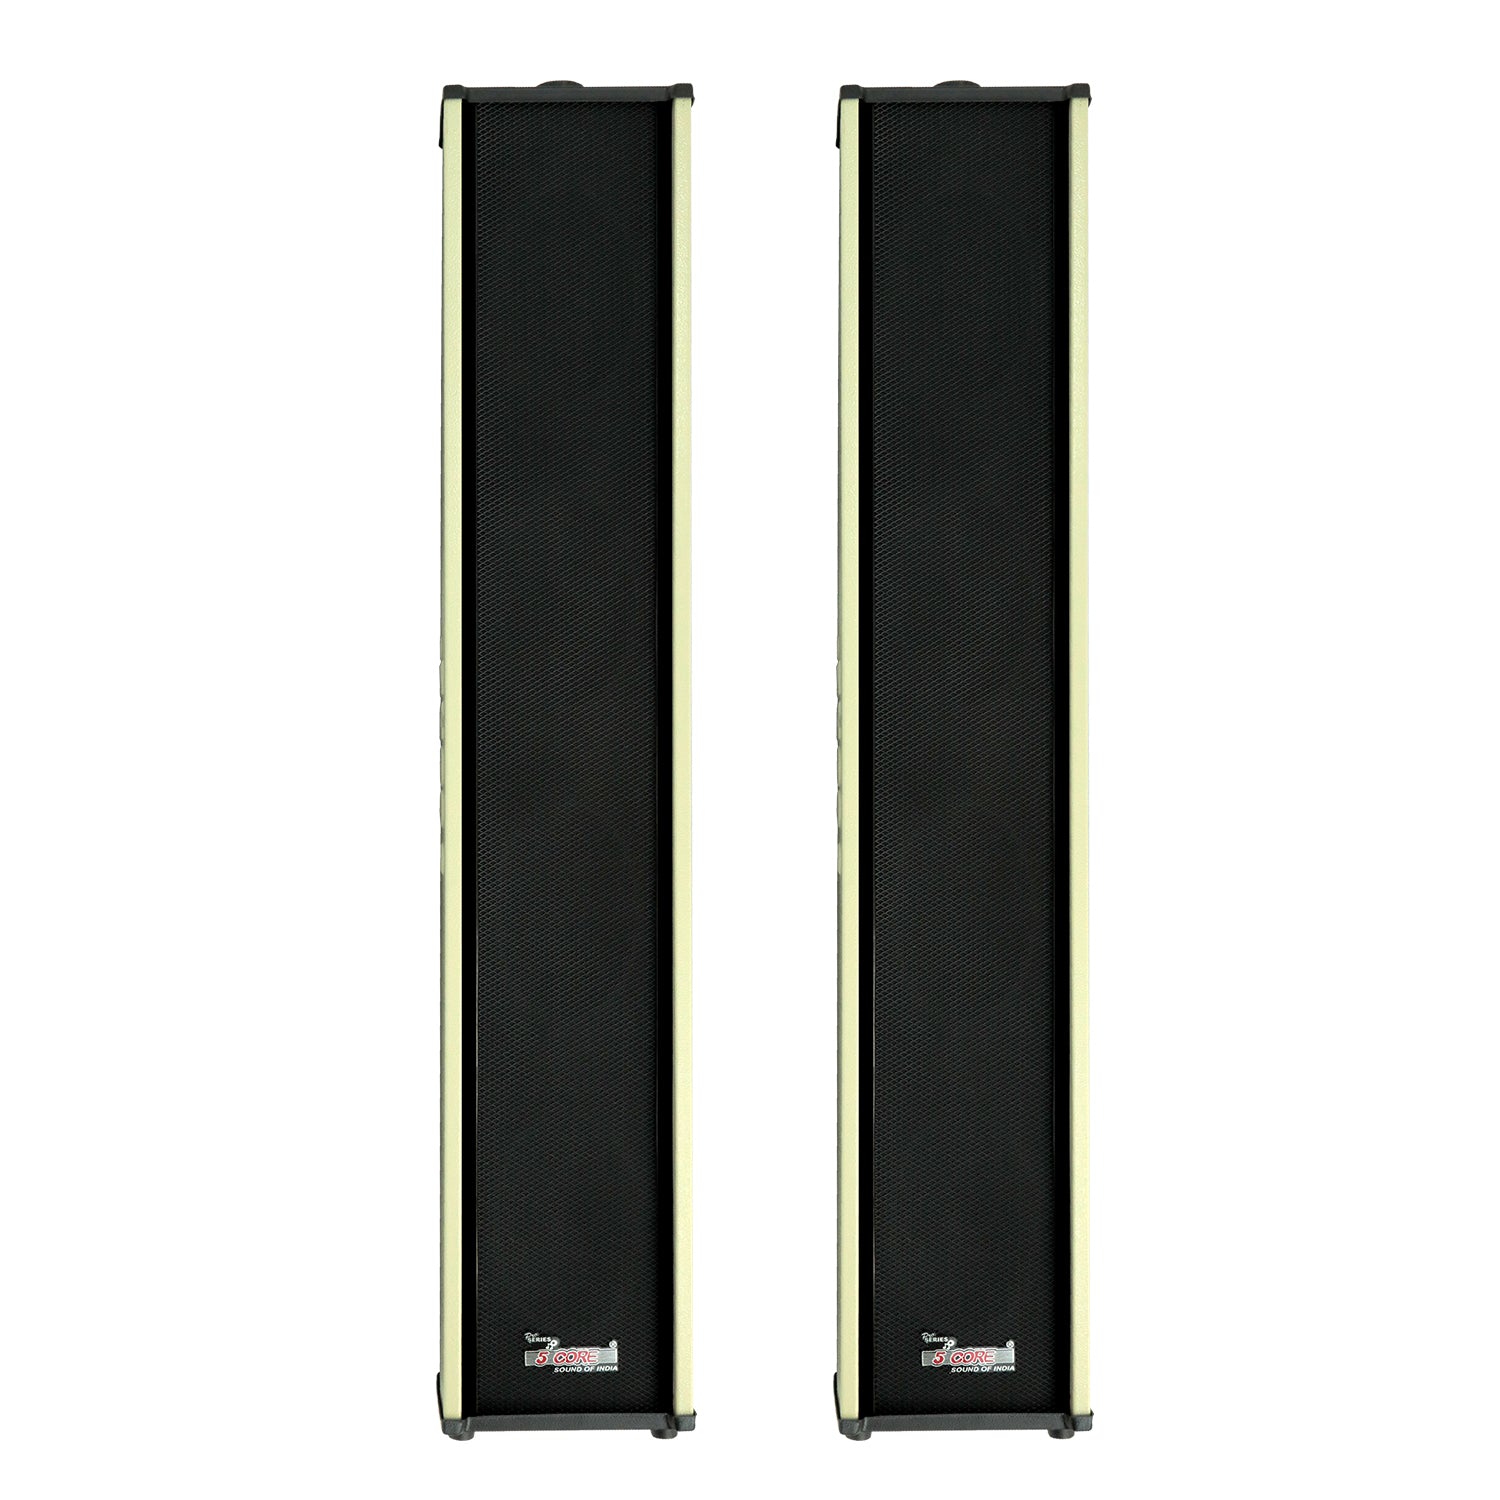 5Core Outdoor Wall Speakers 300W PMPO Power Heavy Duty Waterproof Wall Mount Speakers